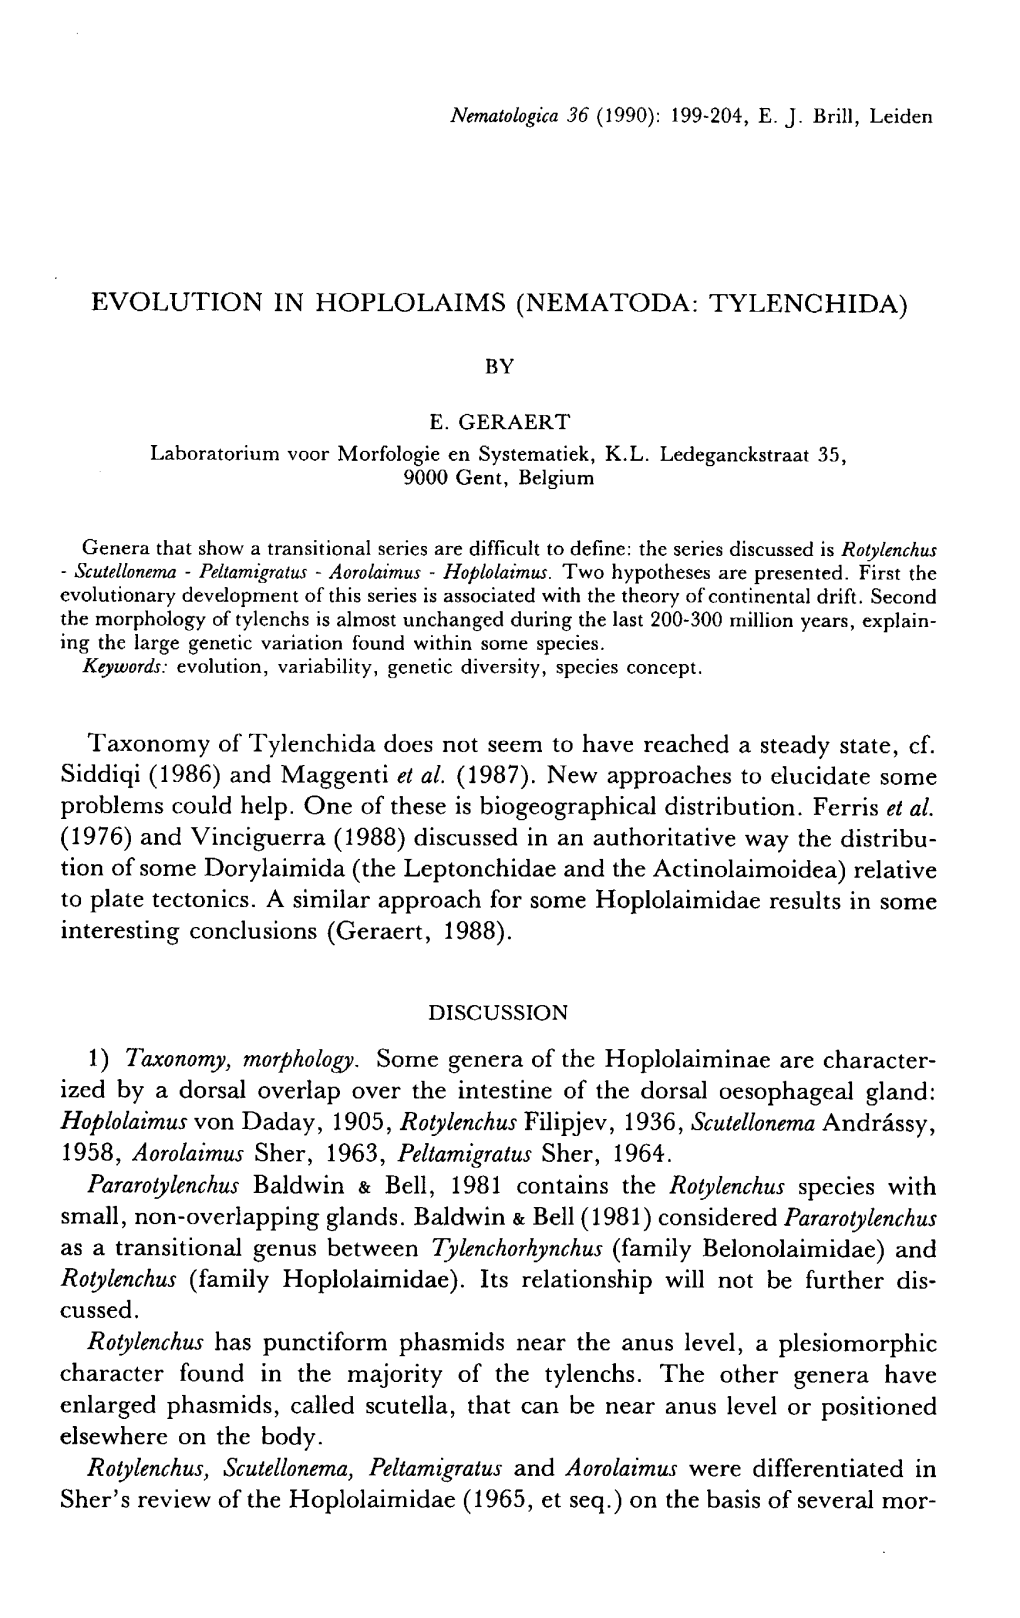 (NEMATODA: TYLENCHIDA) by E.GERAERT Laboratorium Voor Morfologie En Systematiek, KL Ledeganckstraat 35